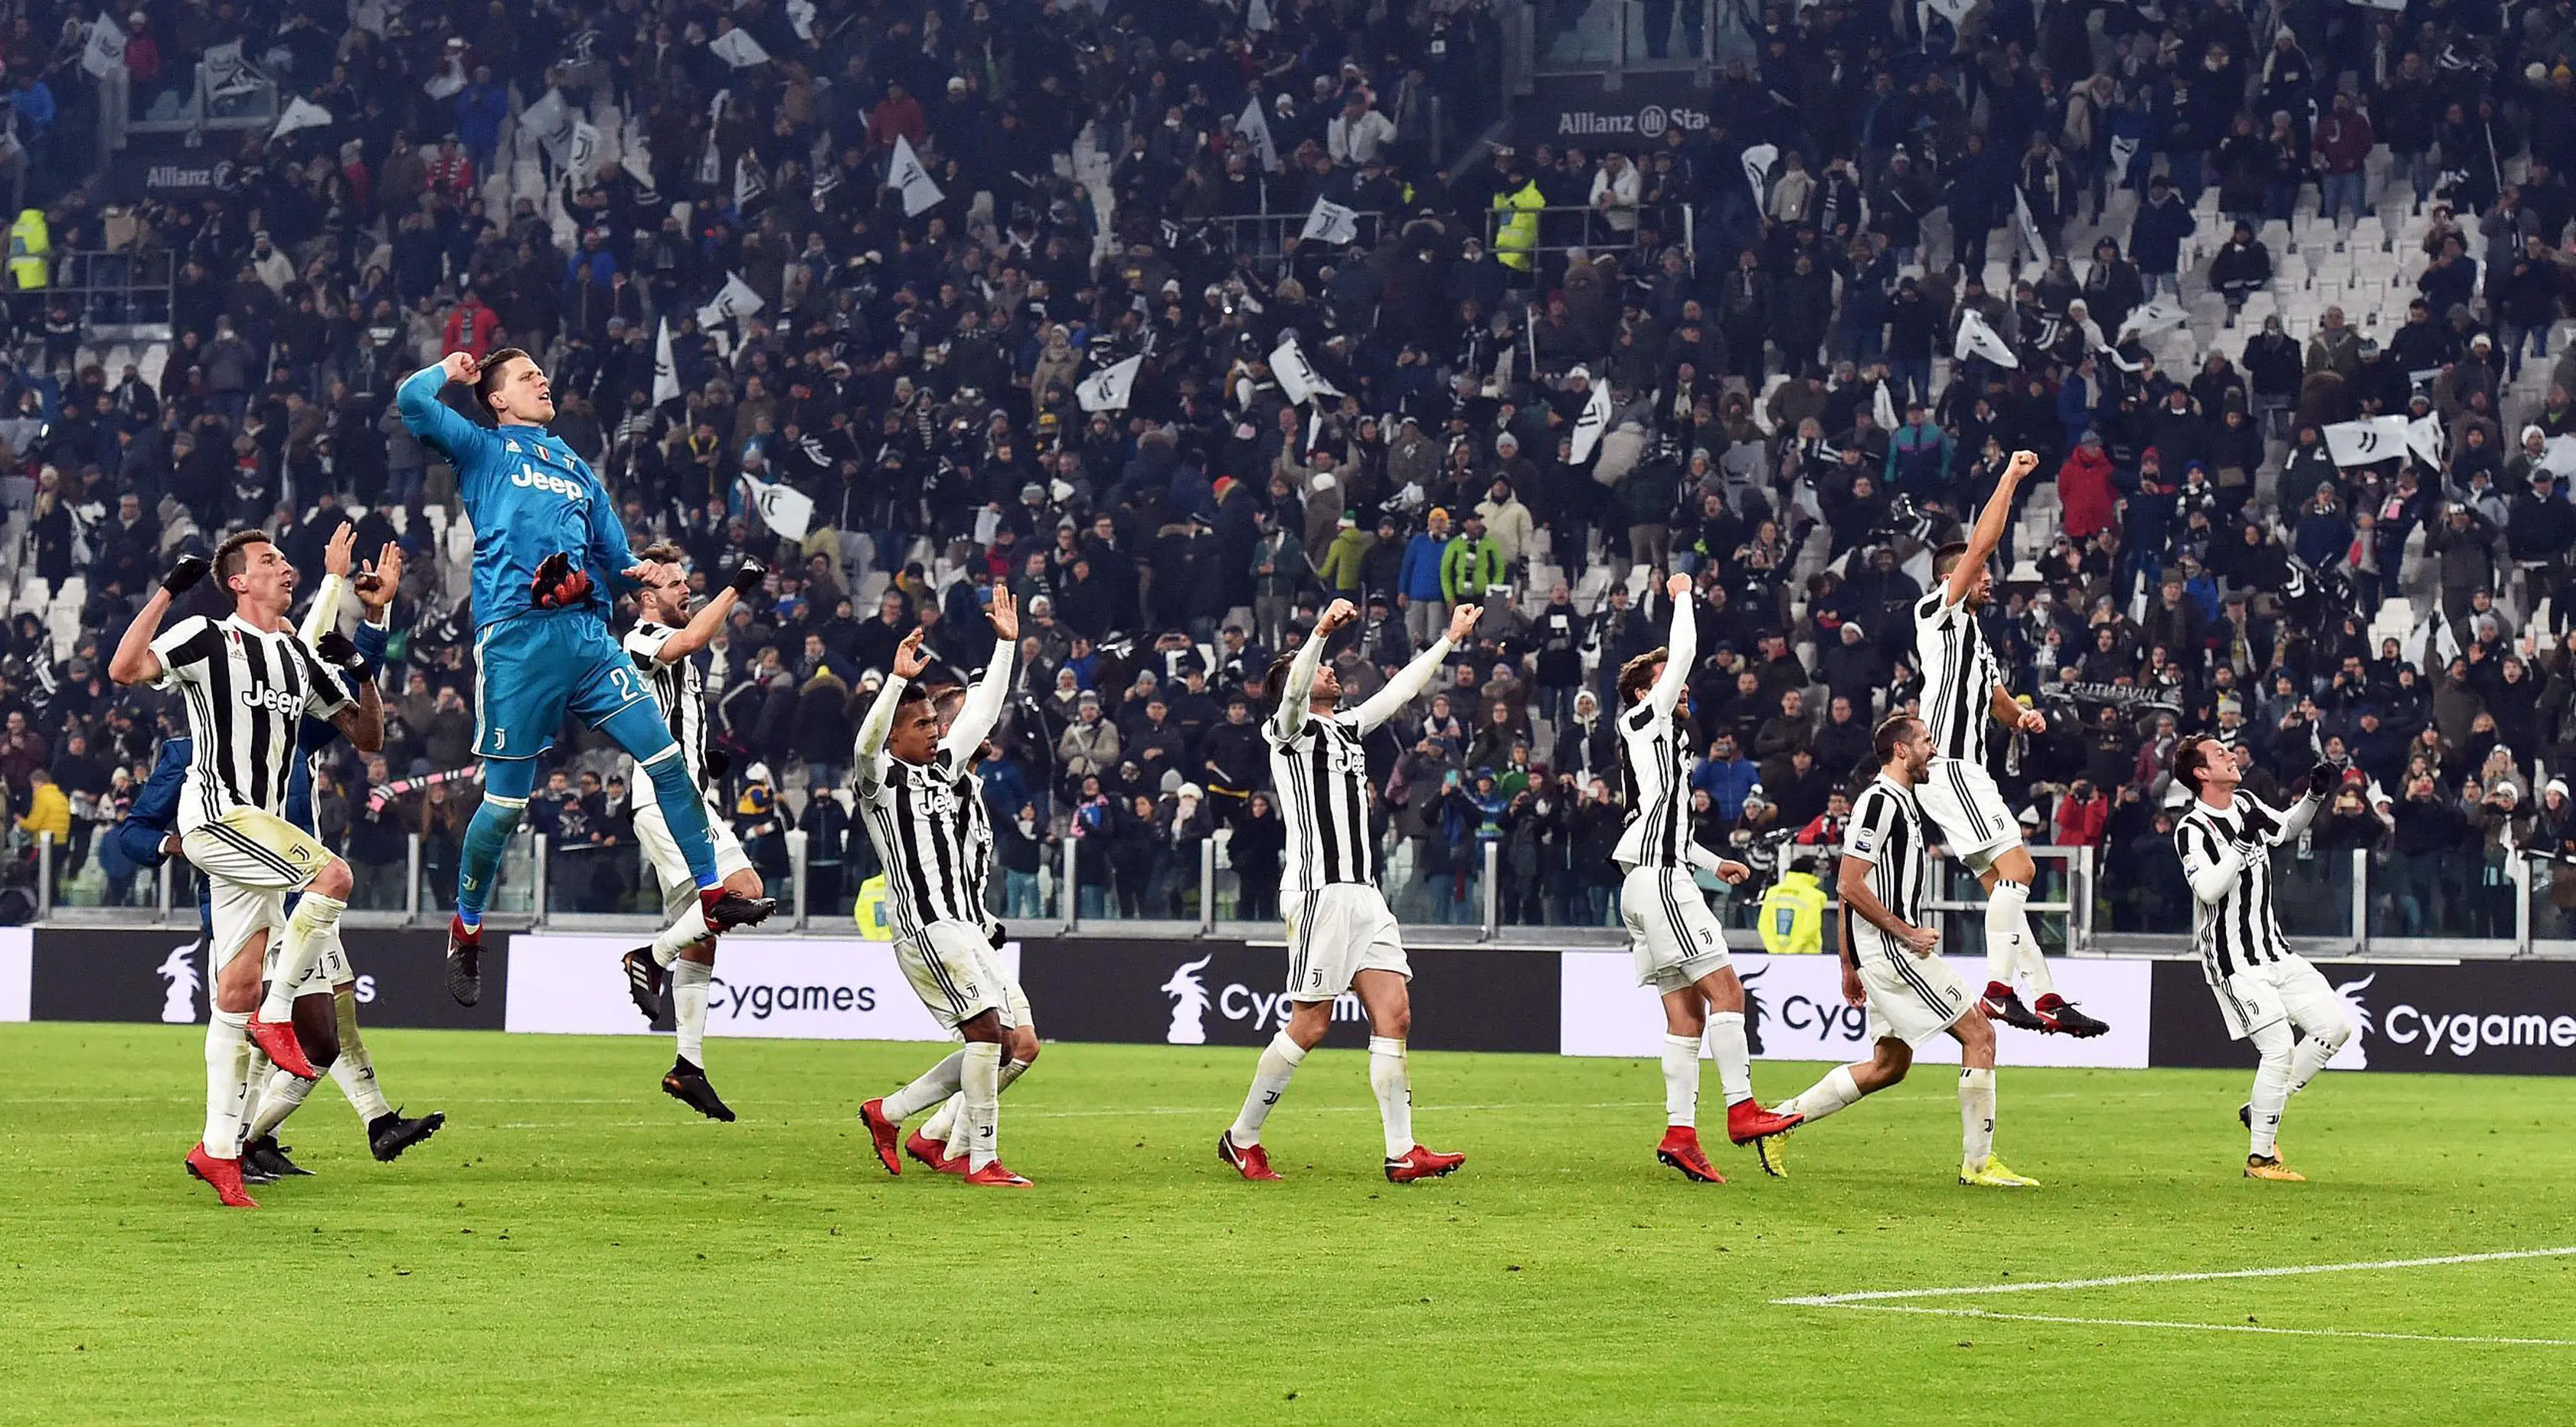 Pemain Juventus merayakan kemenangan mereka usai melawan Roma dalam pertandingan Liga Italia di Turin, Italia (23/12). Pada pertandingan ini Juventus menang 1-0 atas Roma. (Andrea Di Marco / ANSA via AP)